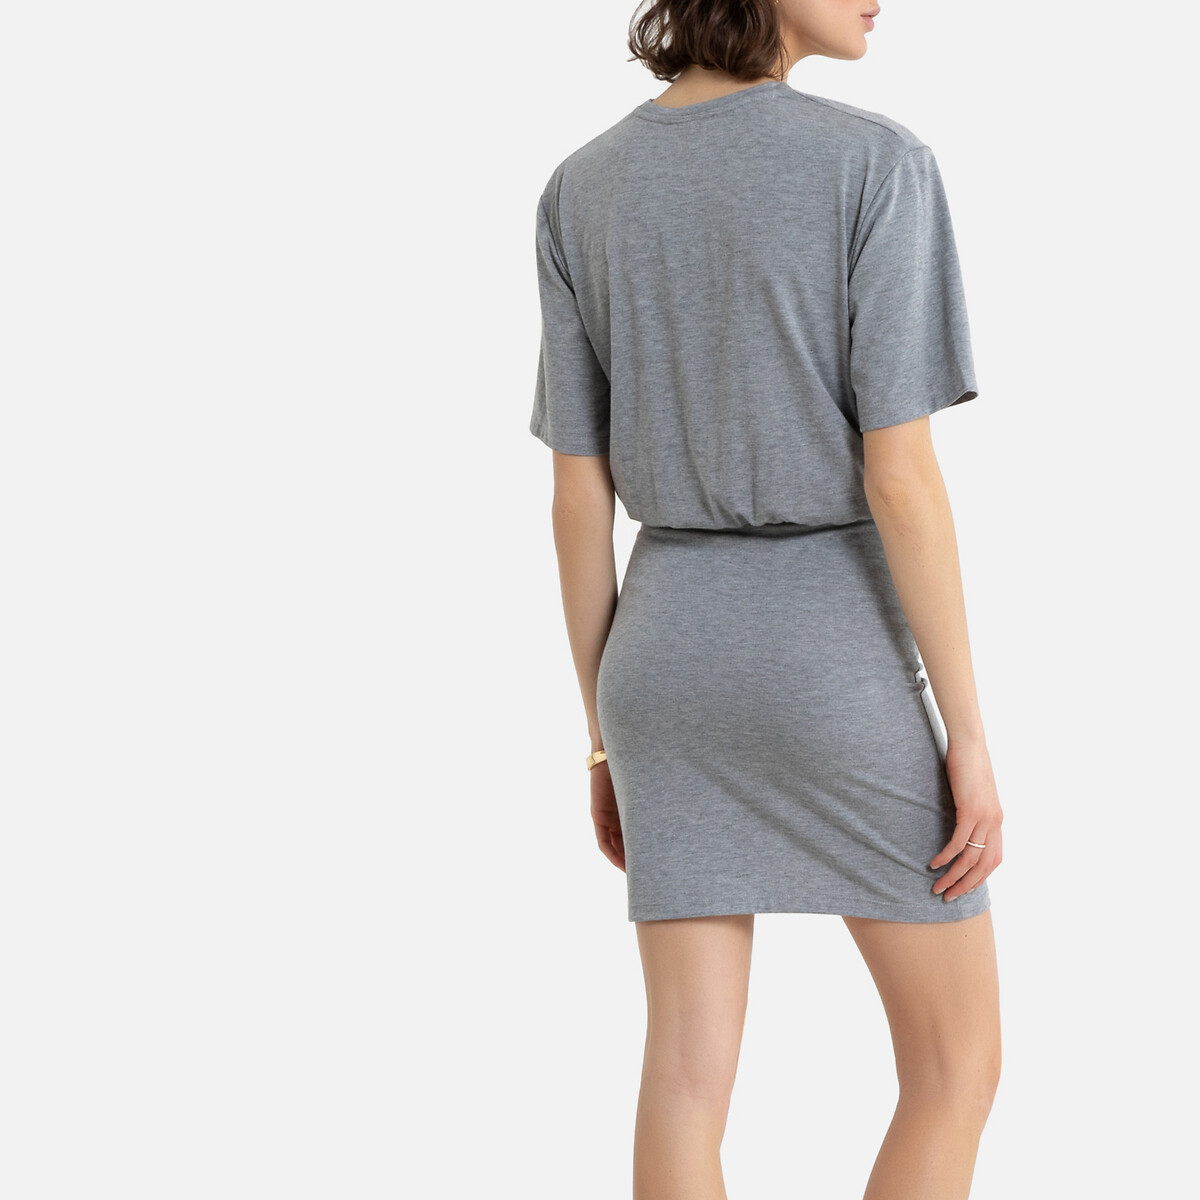 Платье-футболка La Redoute Короткое однотонное с короткими рукавами 40 (FR) - 46 (RUS) серый, размер 40 (FR) - 46 (RUS) Короткое однотонное с короткими рукавами 40 (FR) - 46 (RUS) серый - фото 4